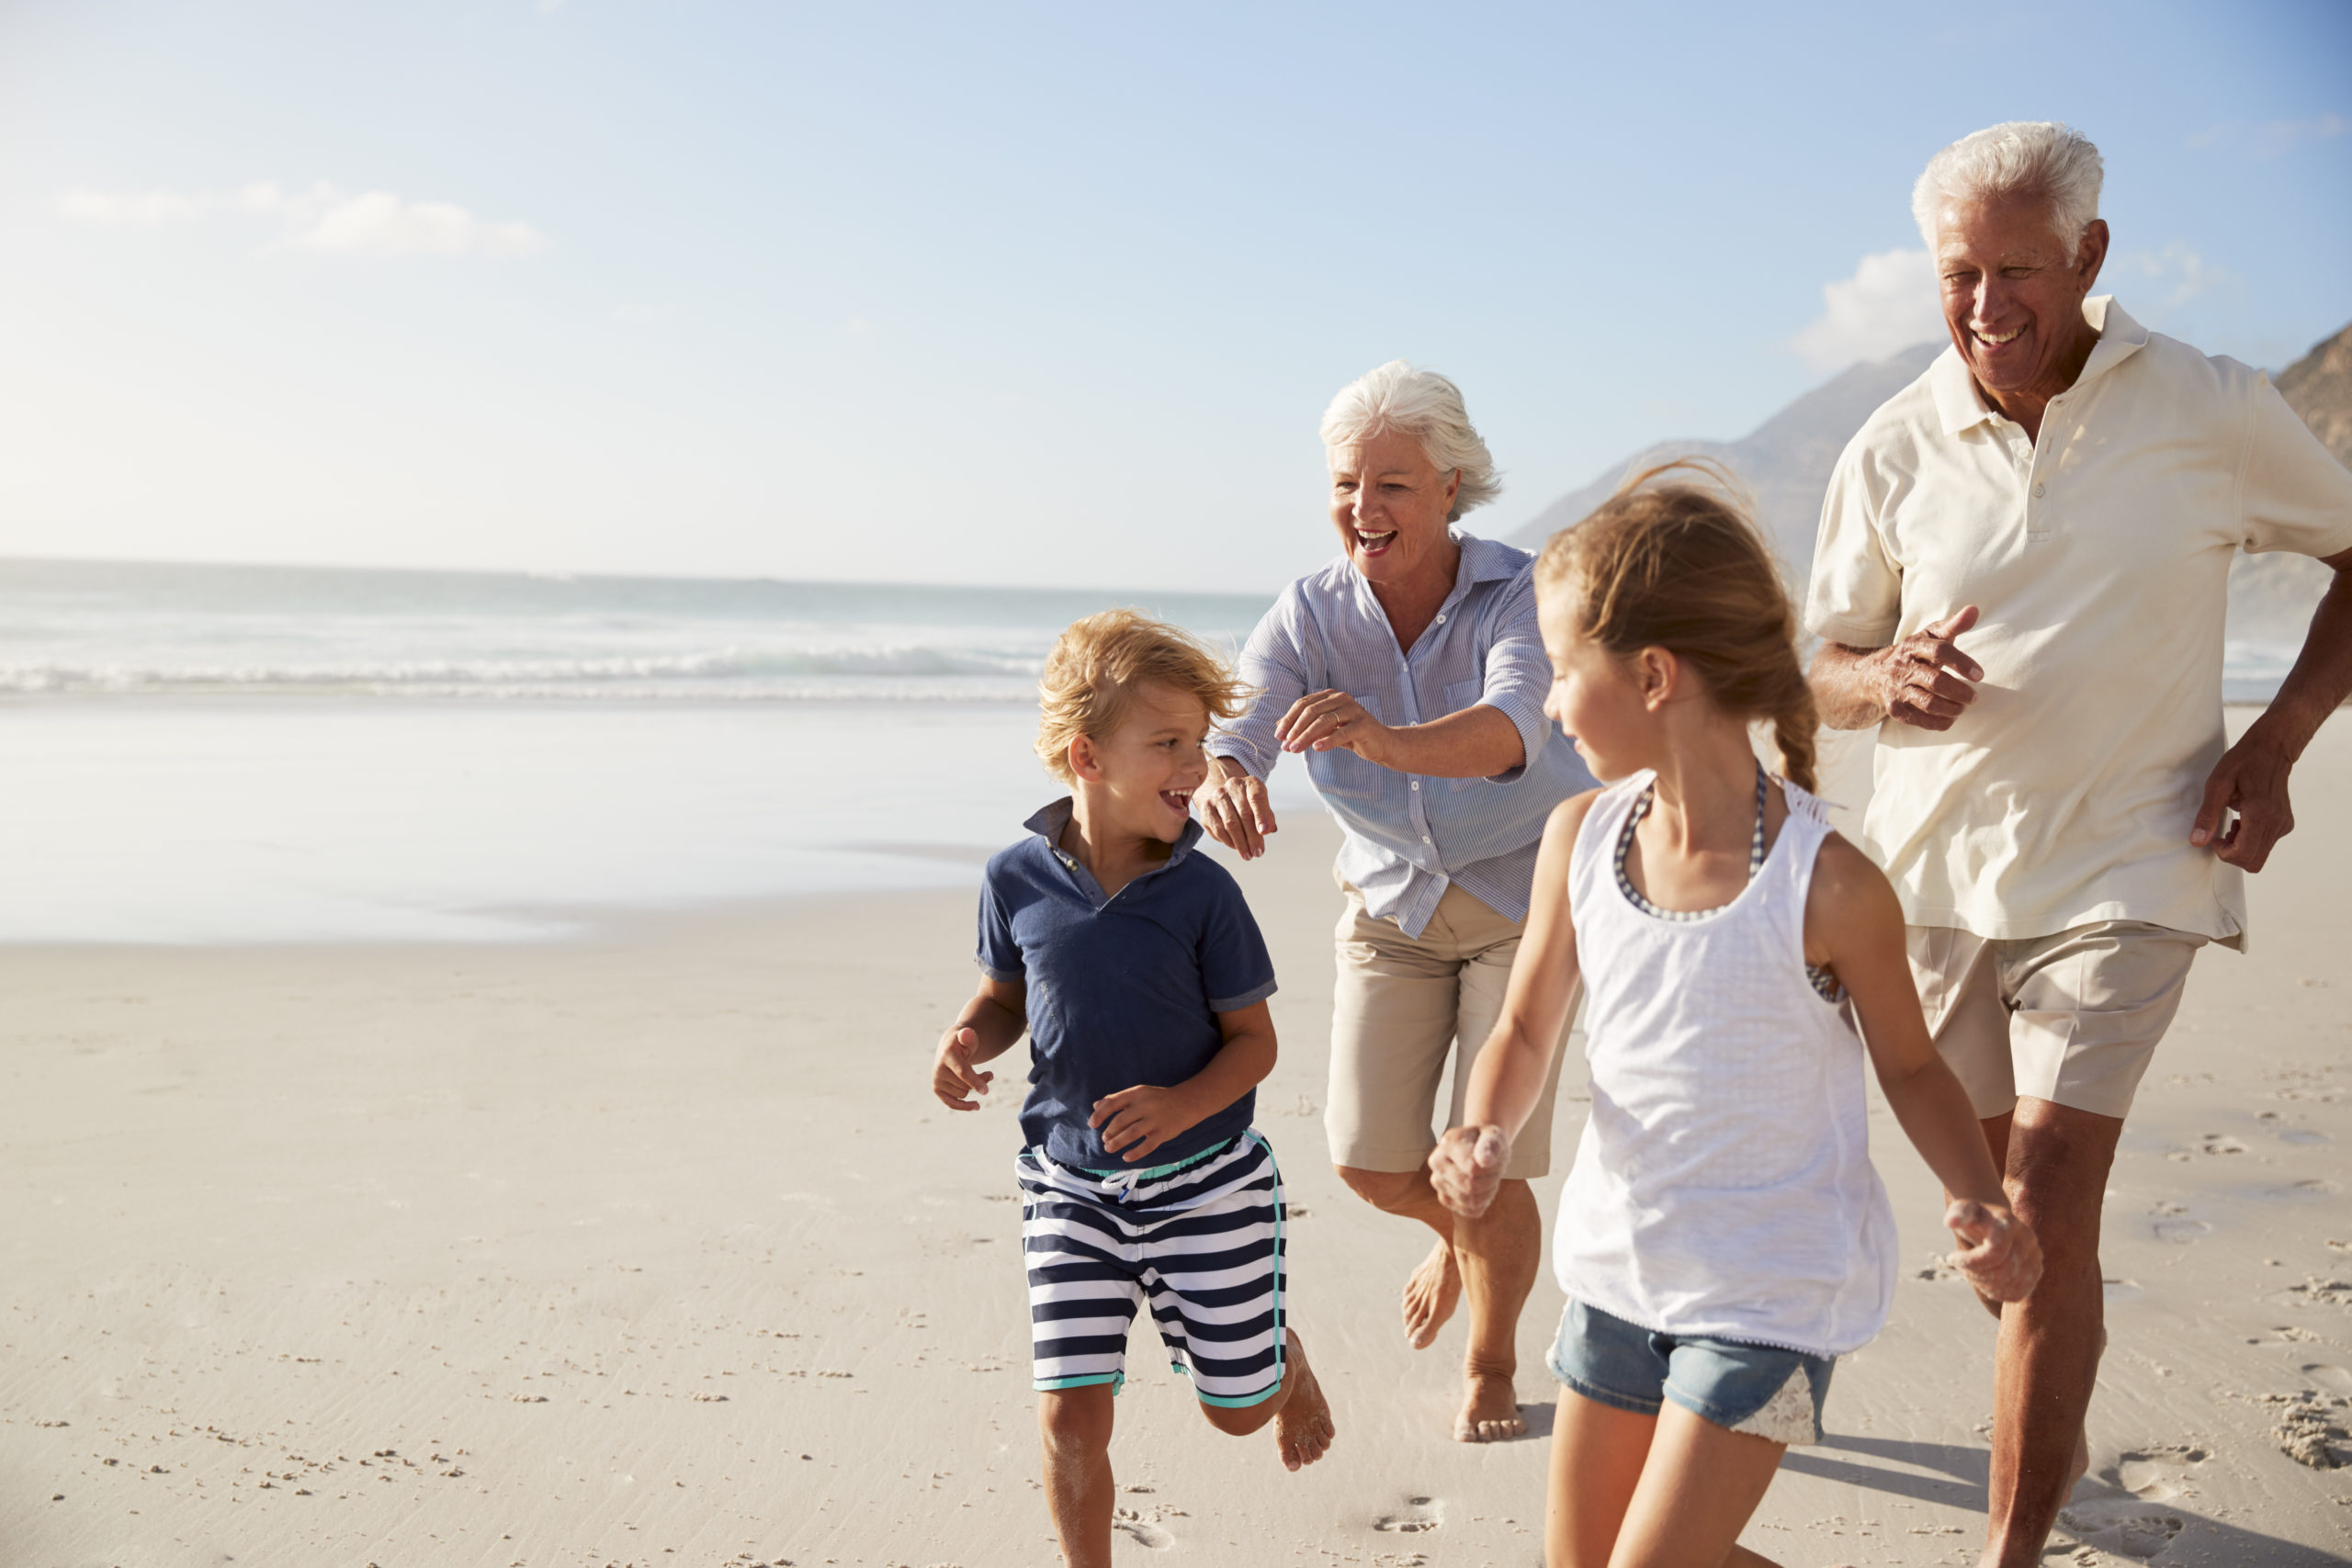 La santé des grands-parents et le bien-être de la famille - The